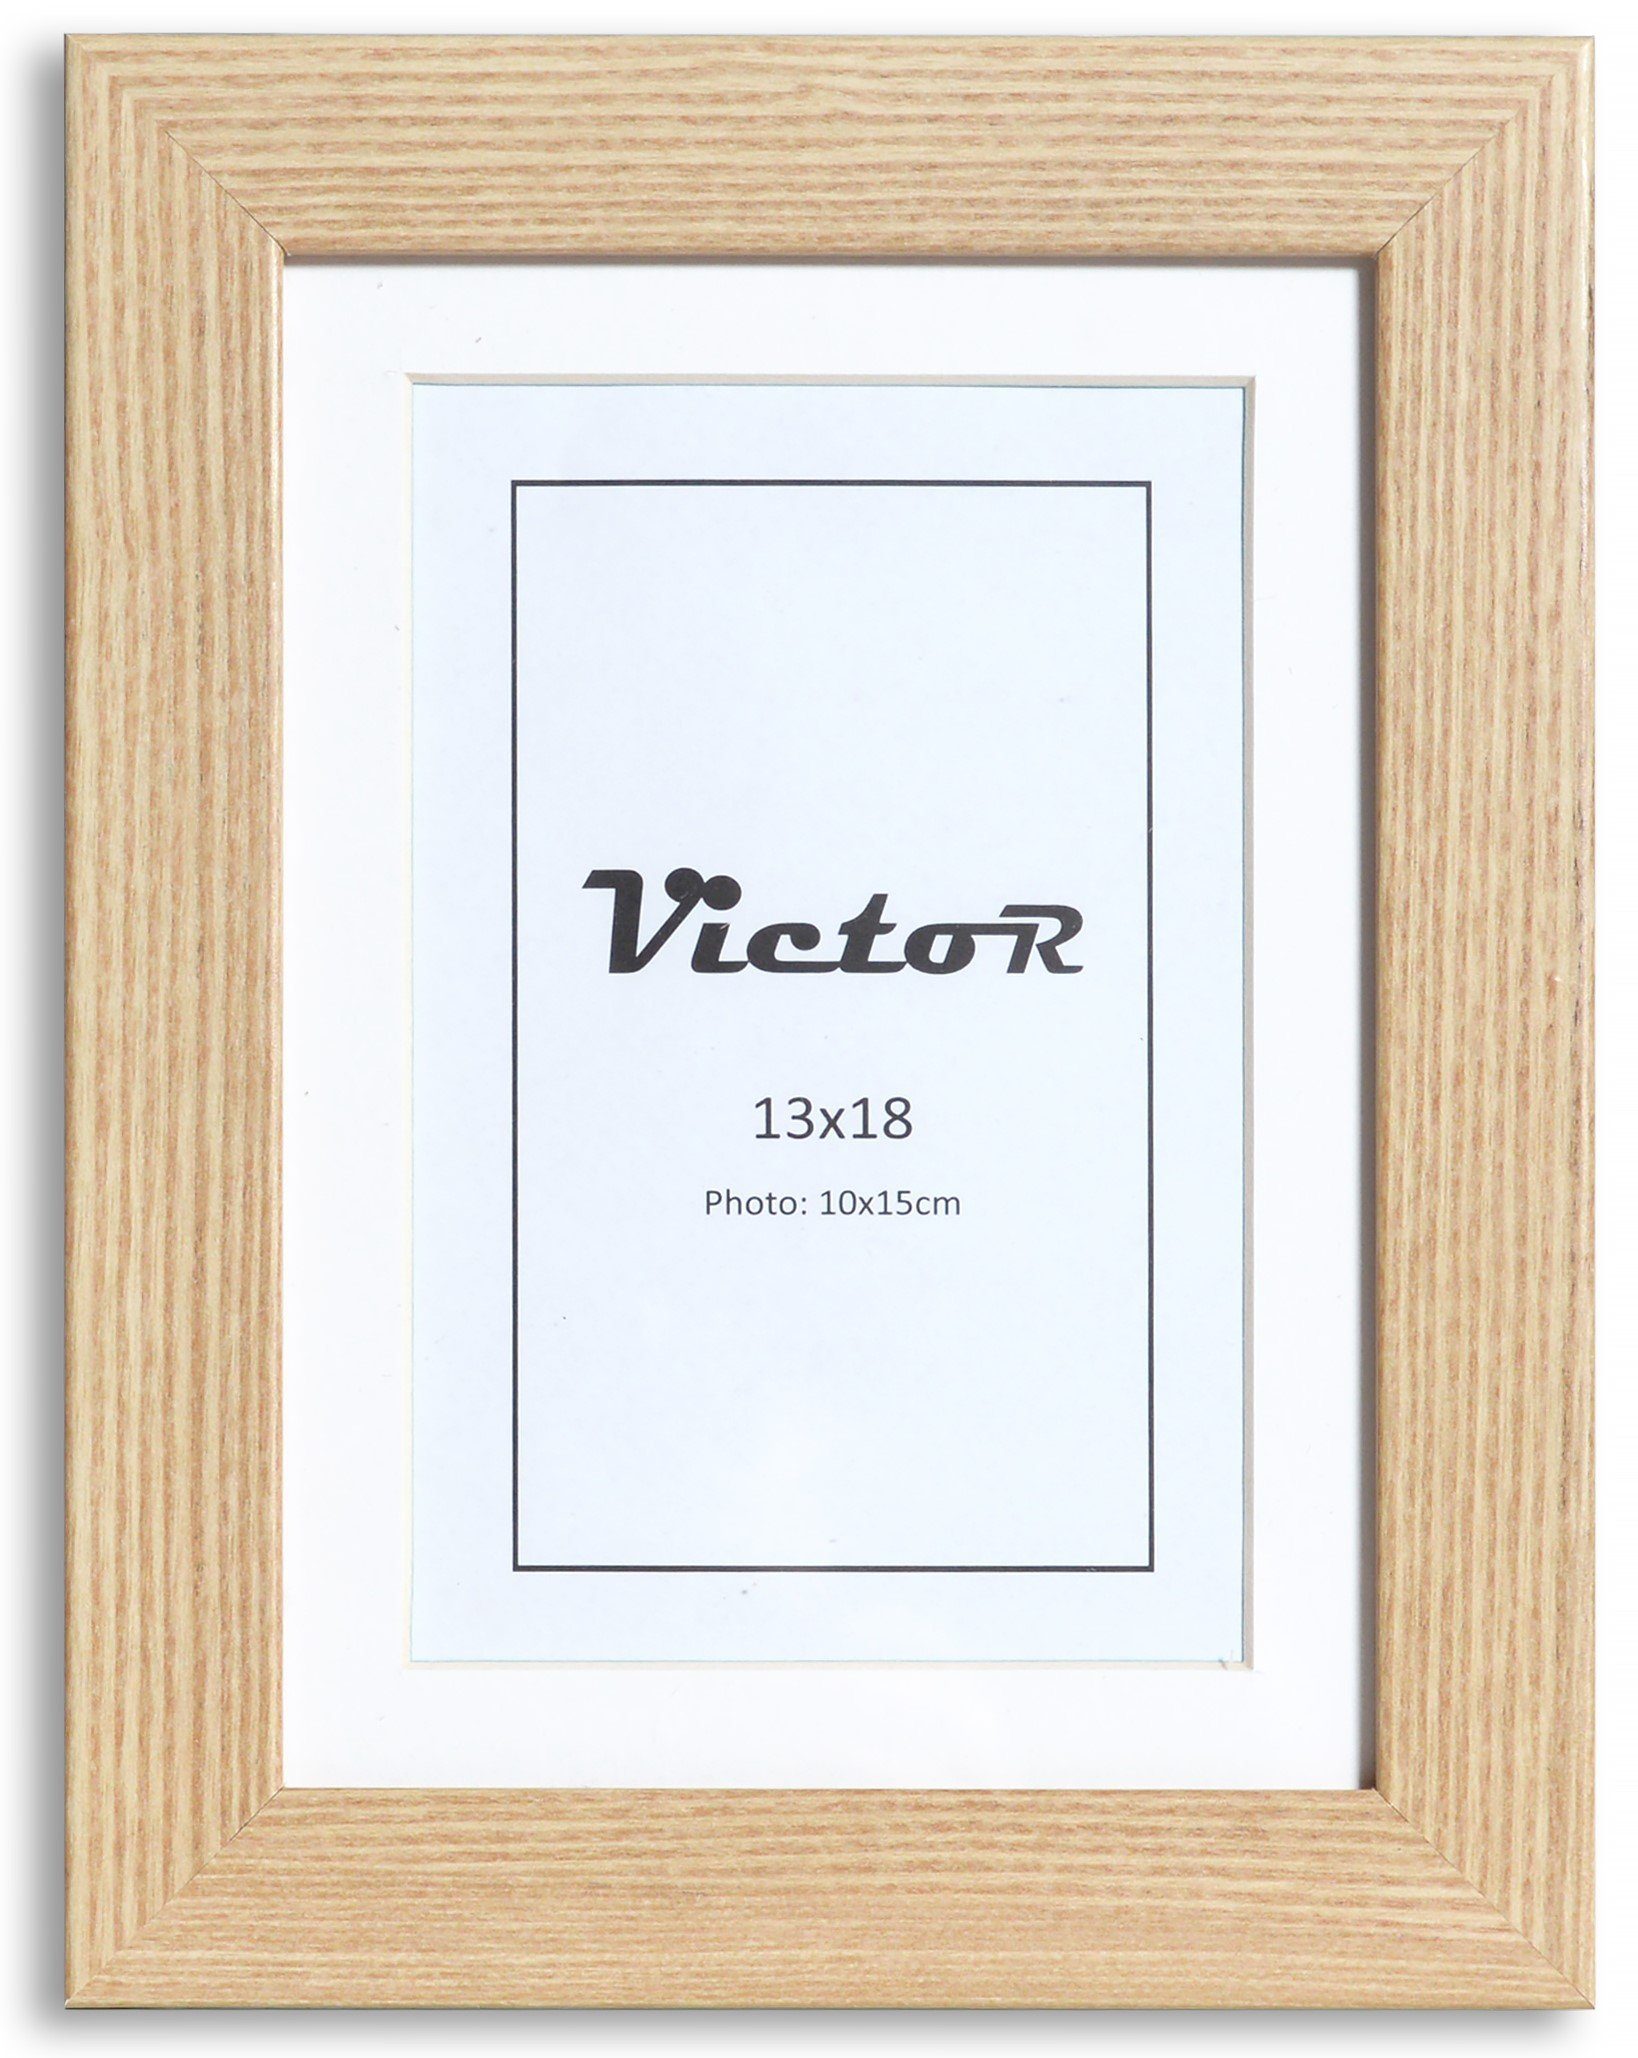 Victor (Zenith) Bilderrahmen Bilderrahmen \"Richter\" - Farbe: Beige - Größe: 13 x 18 cm, Bilderrahmen Beige 13x18 cm mit 10x15 cm Passepartout, Holz